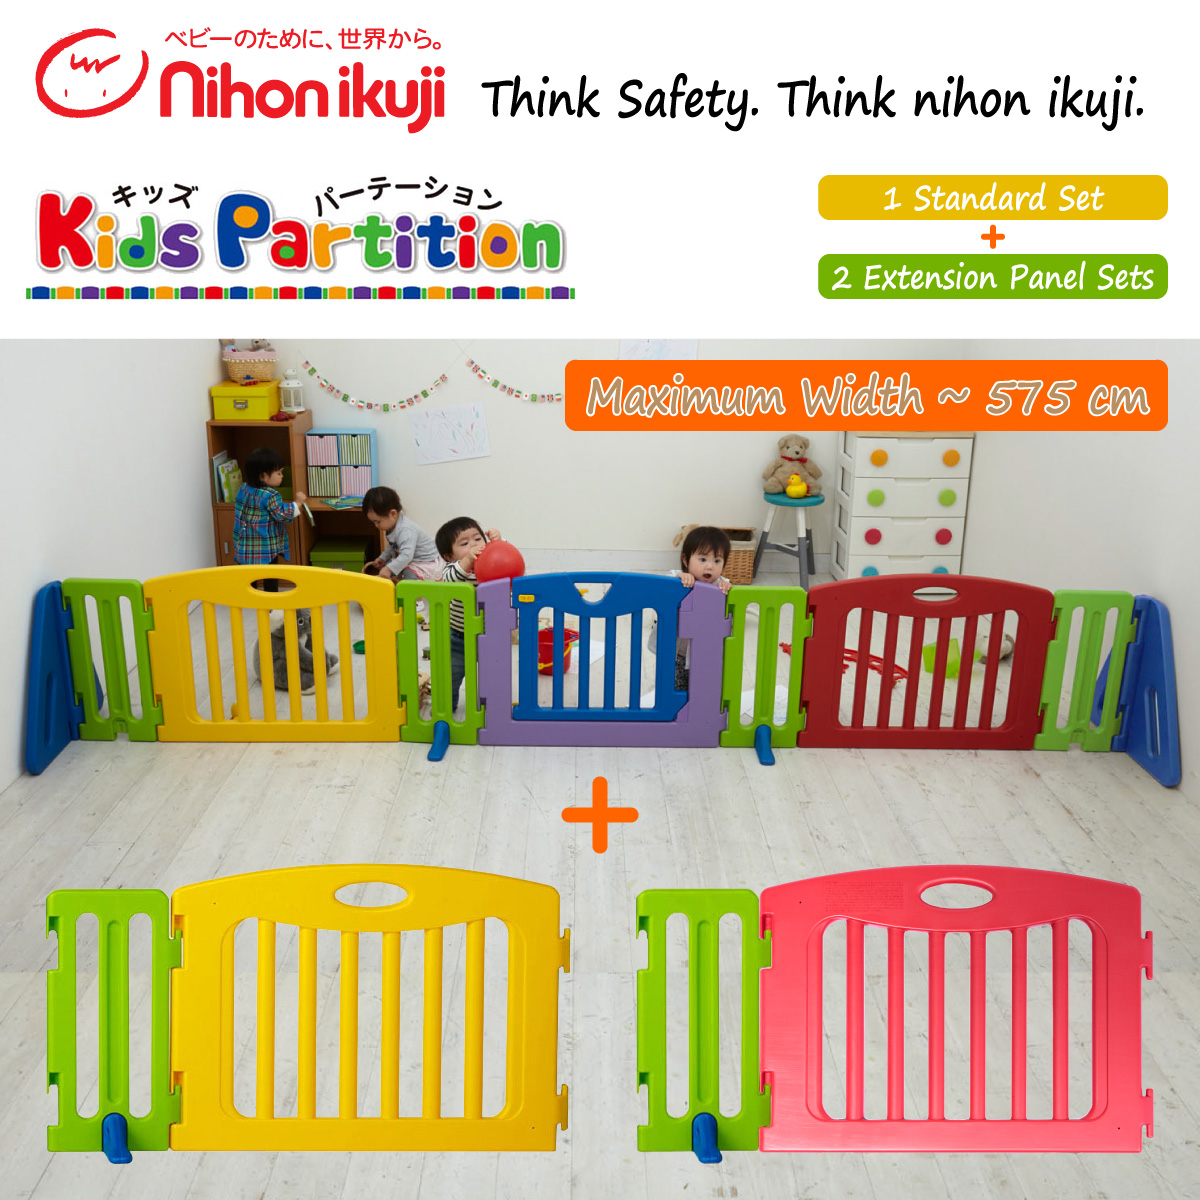 baby-fair nihon ikuji Kids Partition (Maximum Width of 575 cm)